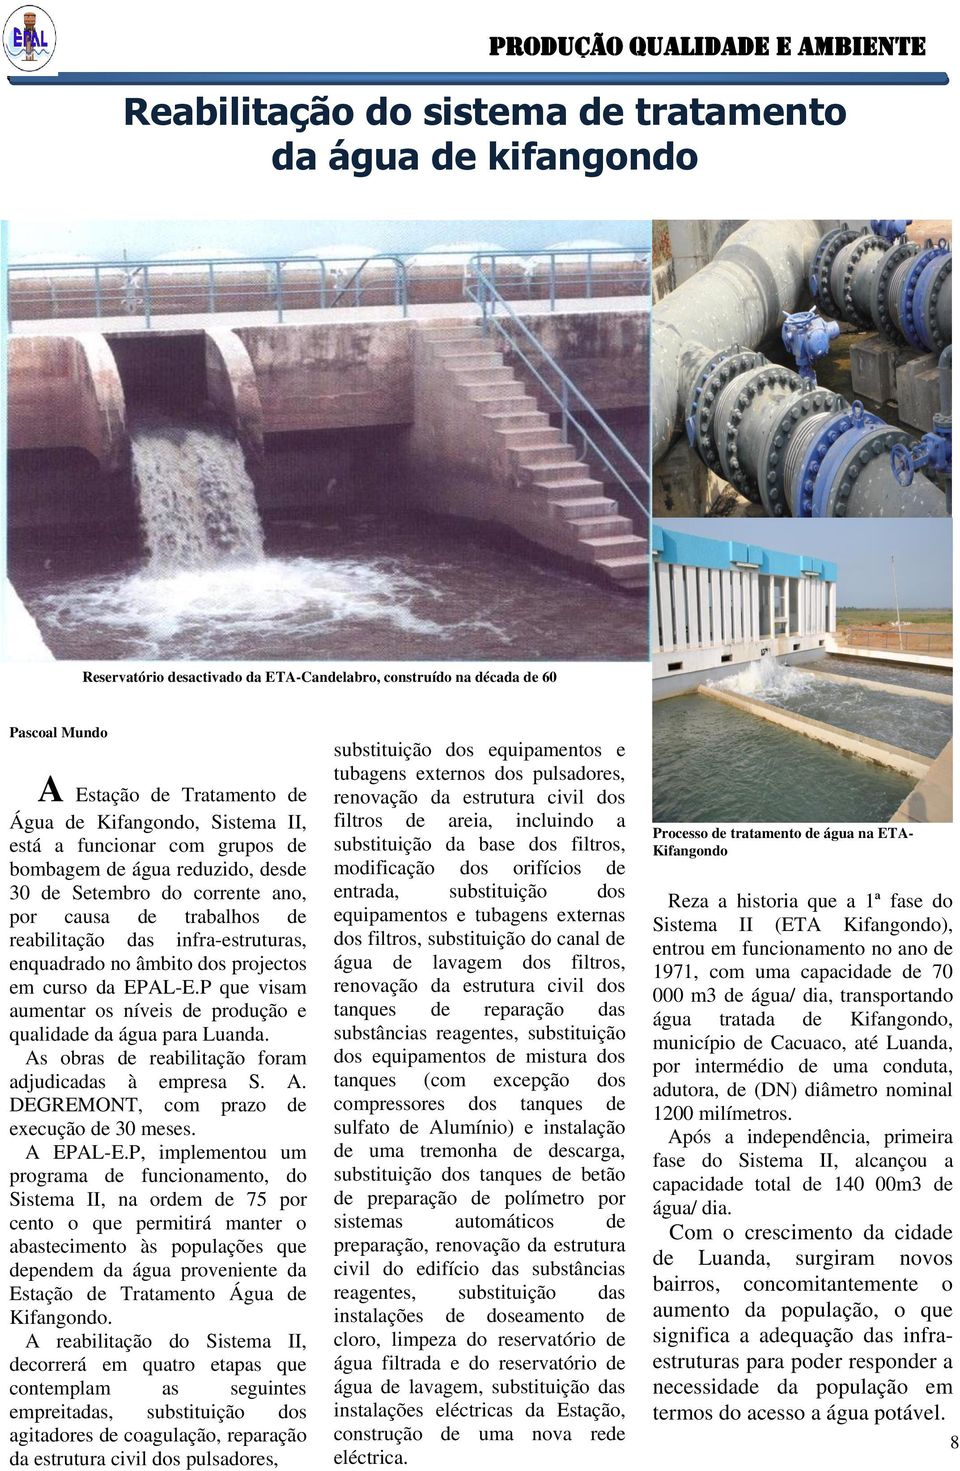 enquadrado no âmbito dos projectos em curso da EPAL-E.P que visam aumentar os níveis de produção e qualidade da água para Luanda. As obras de reabilitação foram adjudicadas à empresa S. A. DEGREMONT, com prazo de execução de 30 meses.